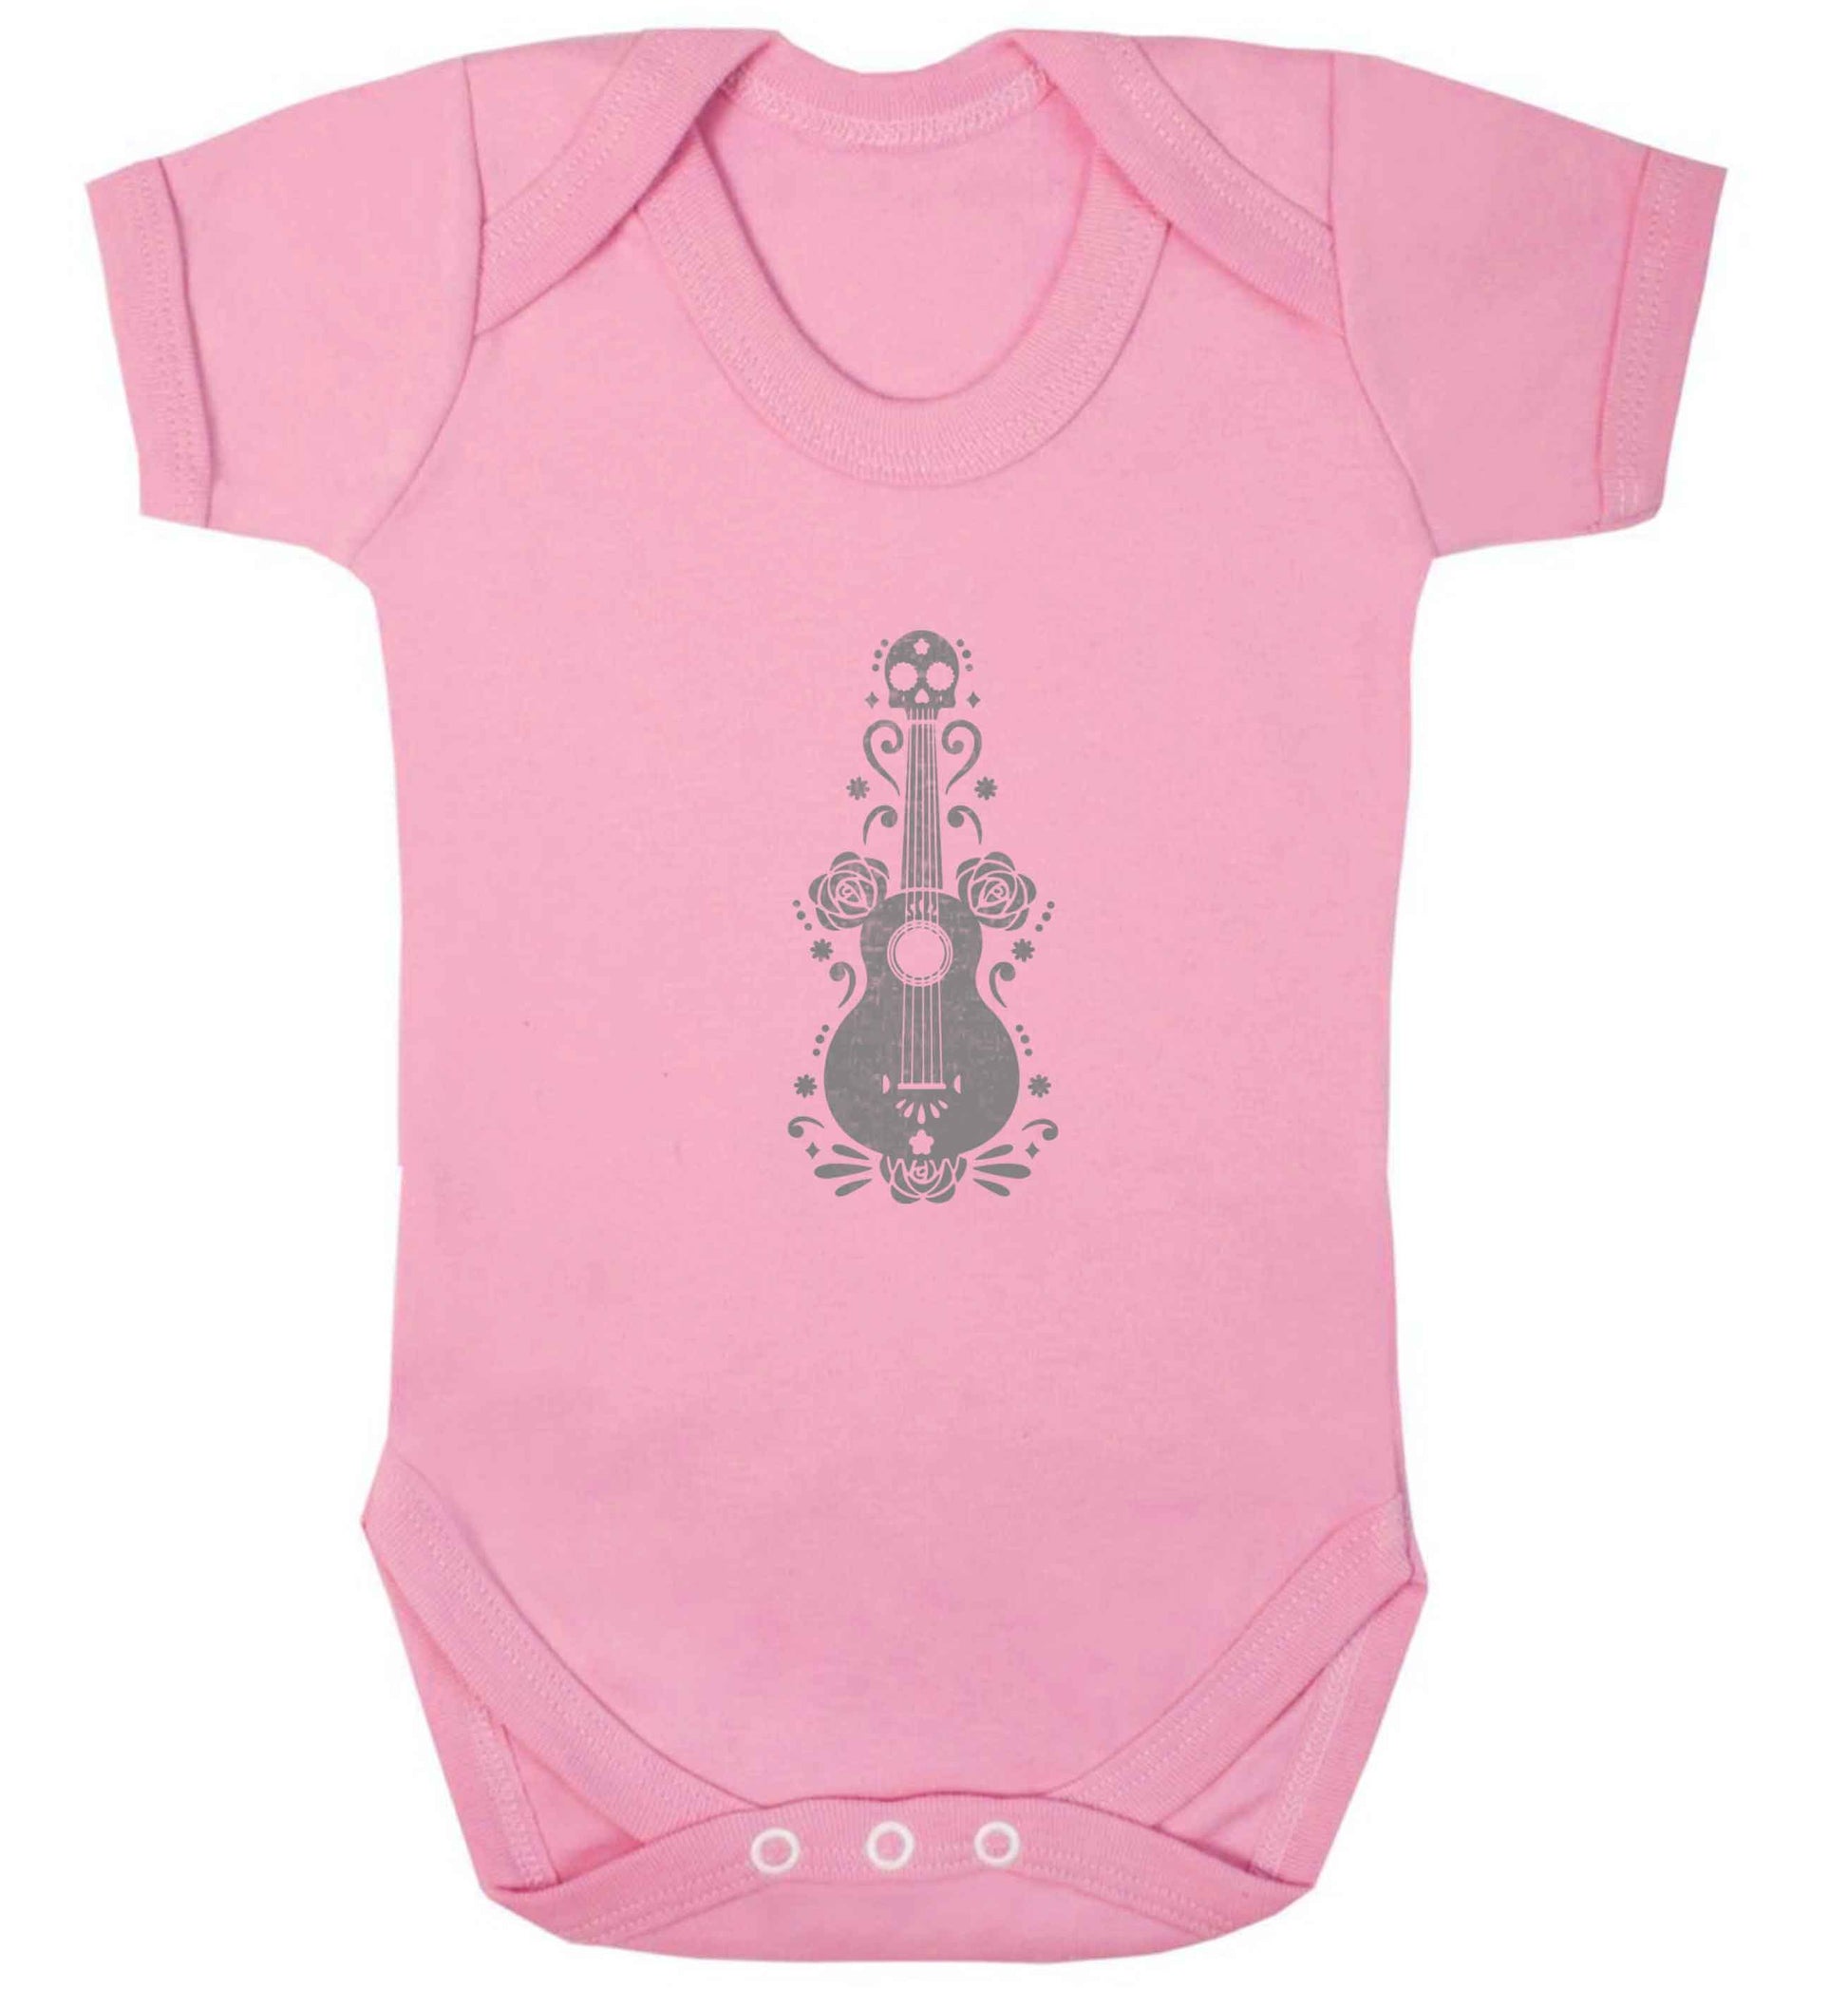 Guitar skull illustration baby vest pale pink 18-24 months